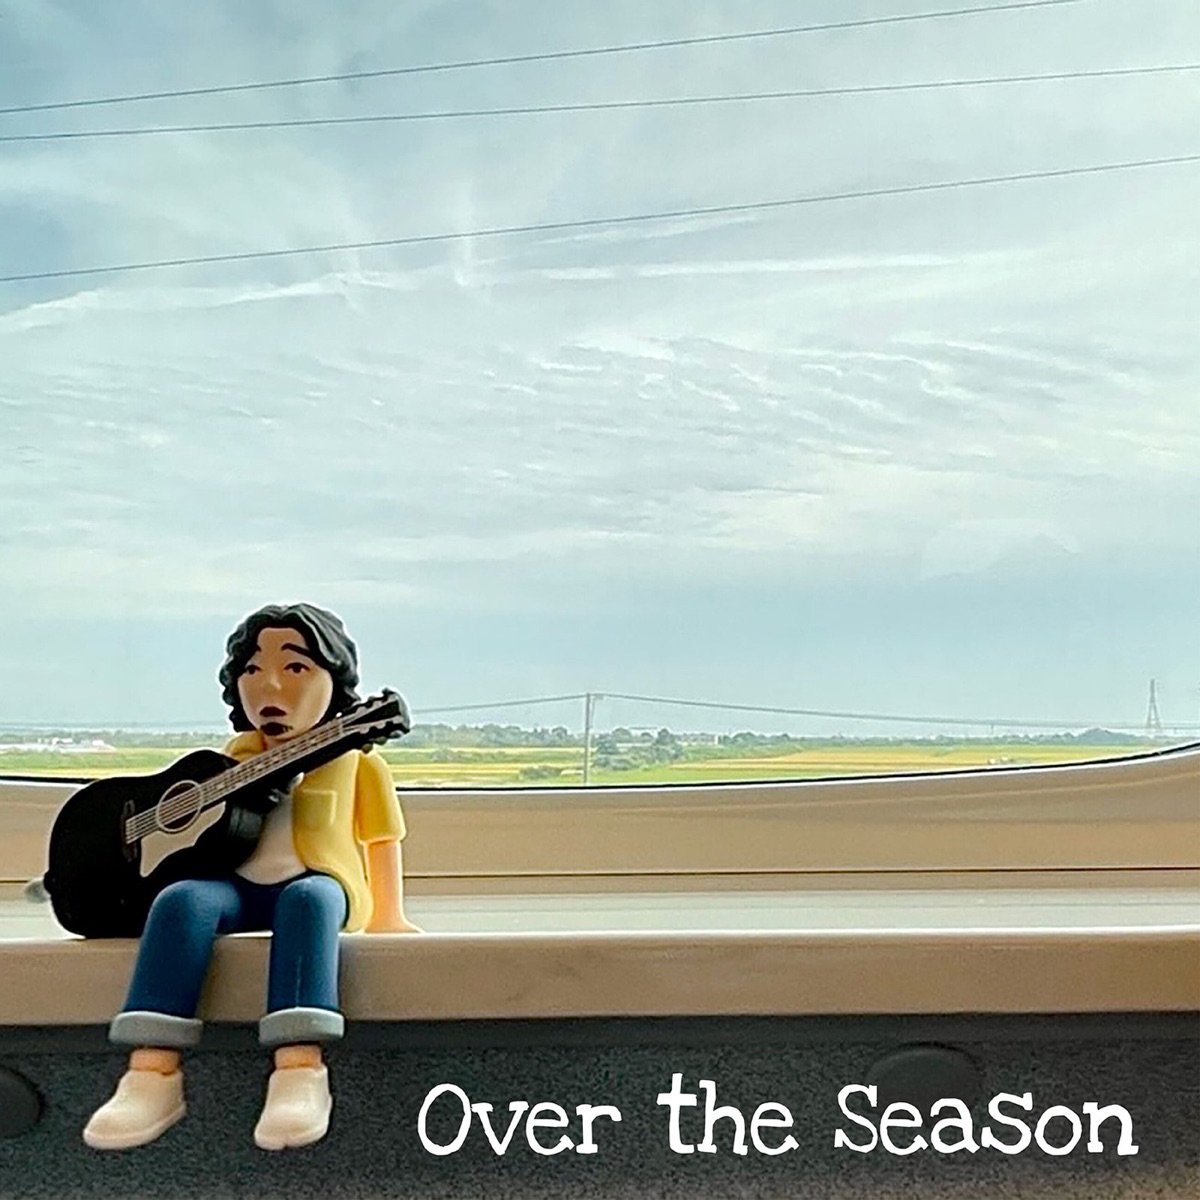 『斉藤和義 - Over the Season 歌詞』収録の『Over the Season』ジャケット